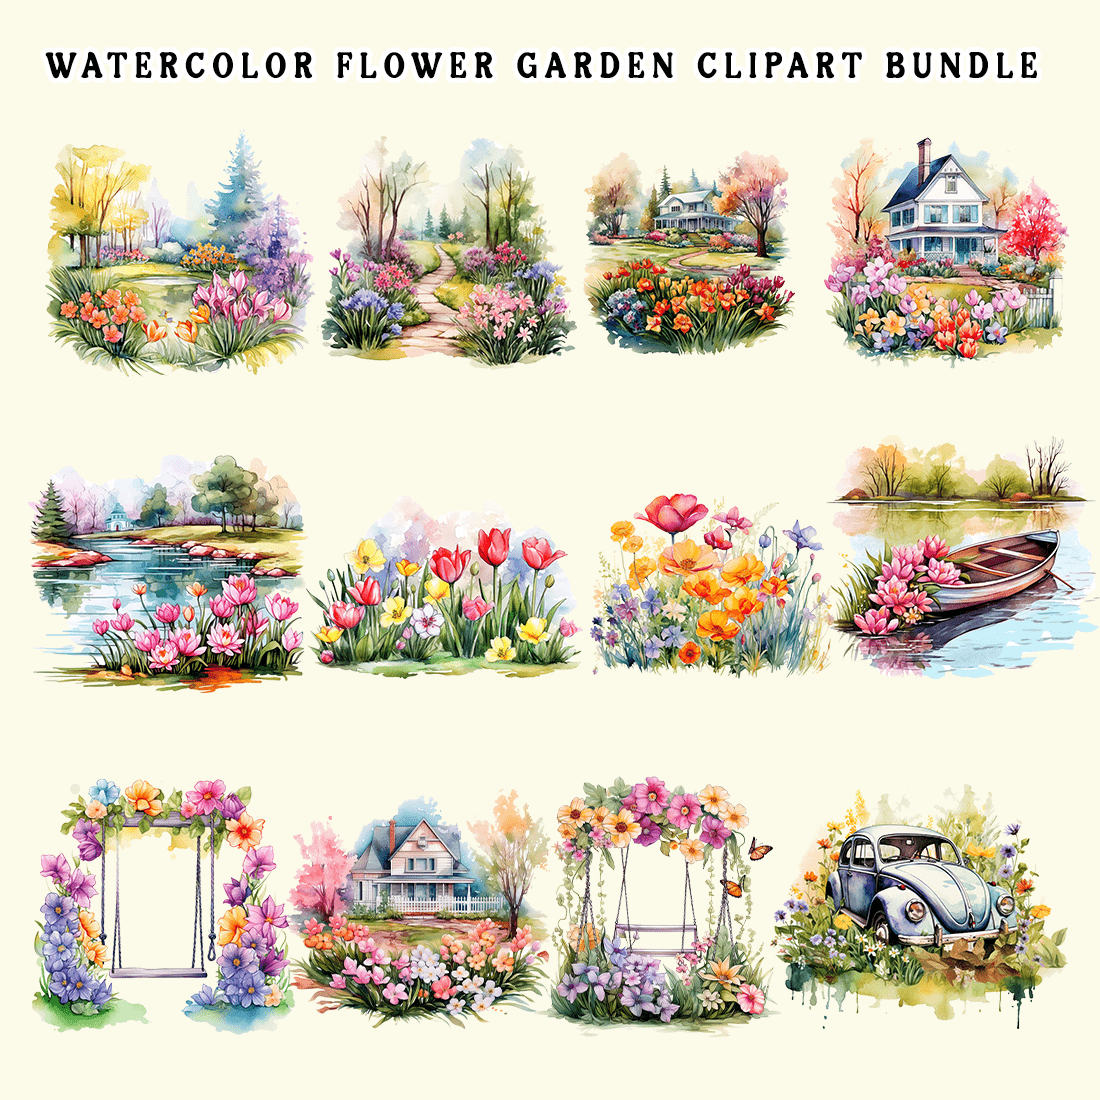 Watercolor Flower Garden Clipart Bundle preview image.